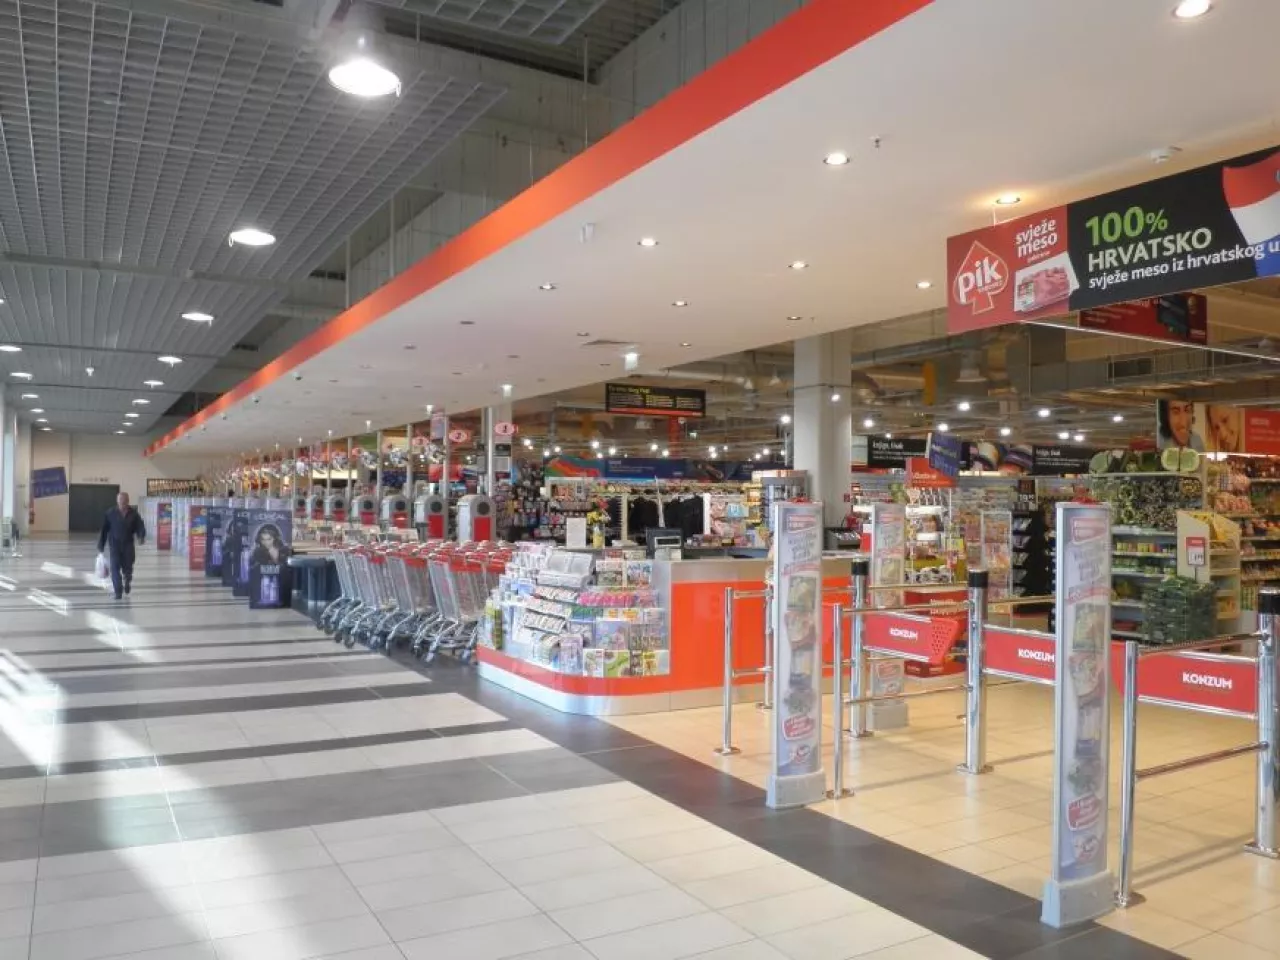 Wnętrze jednego z największych i najnowocześniejszych supermarketów Konzum Super w Splicie (Autor: Macic7 (Praca własna) [CC BY-SA 3.0 (http://creativecommons.org/licenses/by-sa/3.0) lub GFDL (http://www.gnu.org/copyleft)